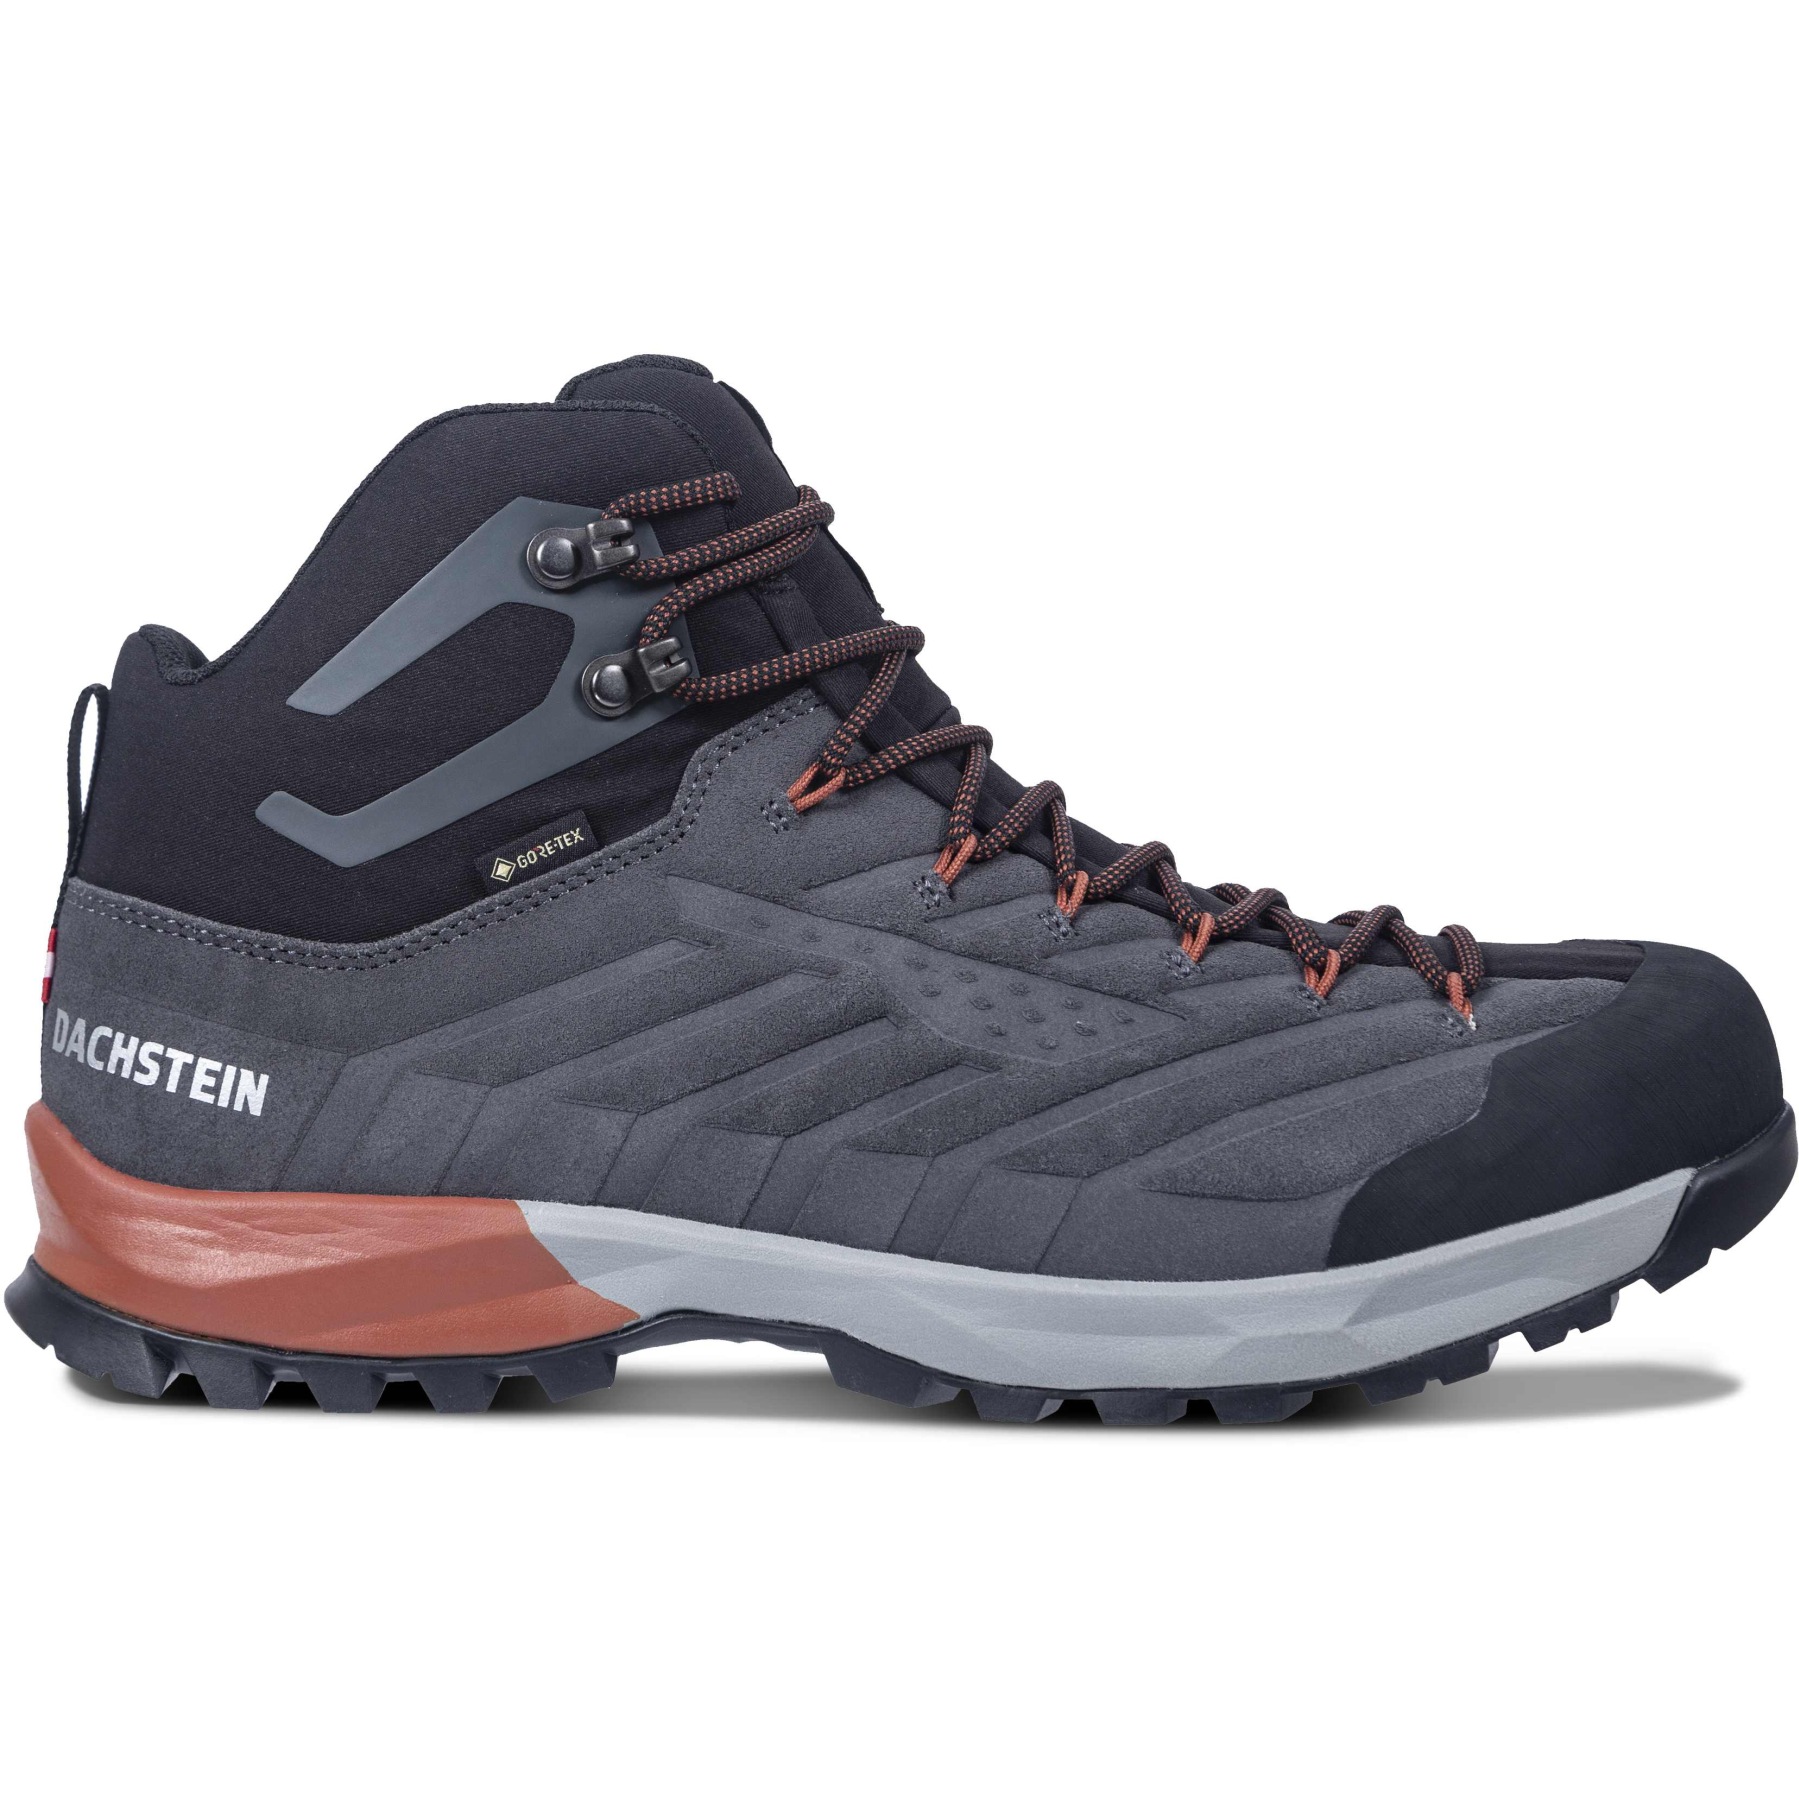 Bild von Dachstein SF-21 MC GTX Outdoor-Schuhe Herren - granite